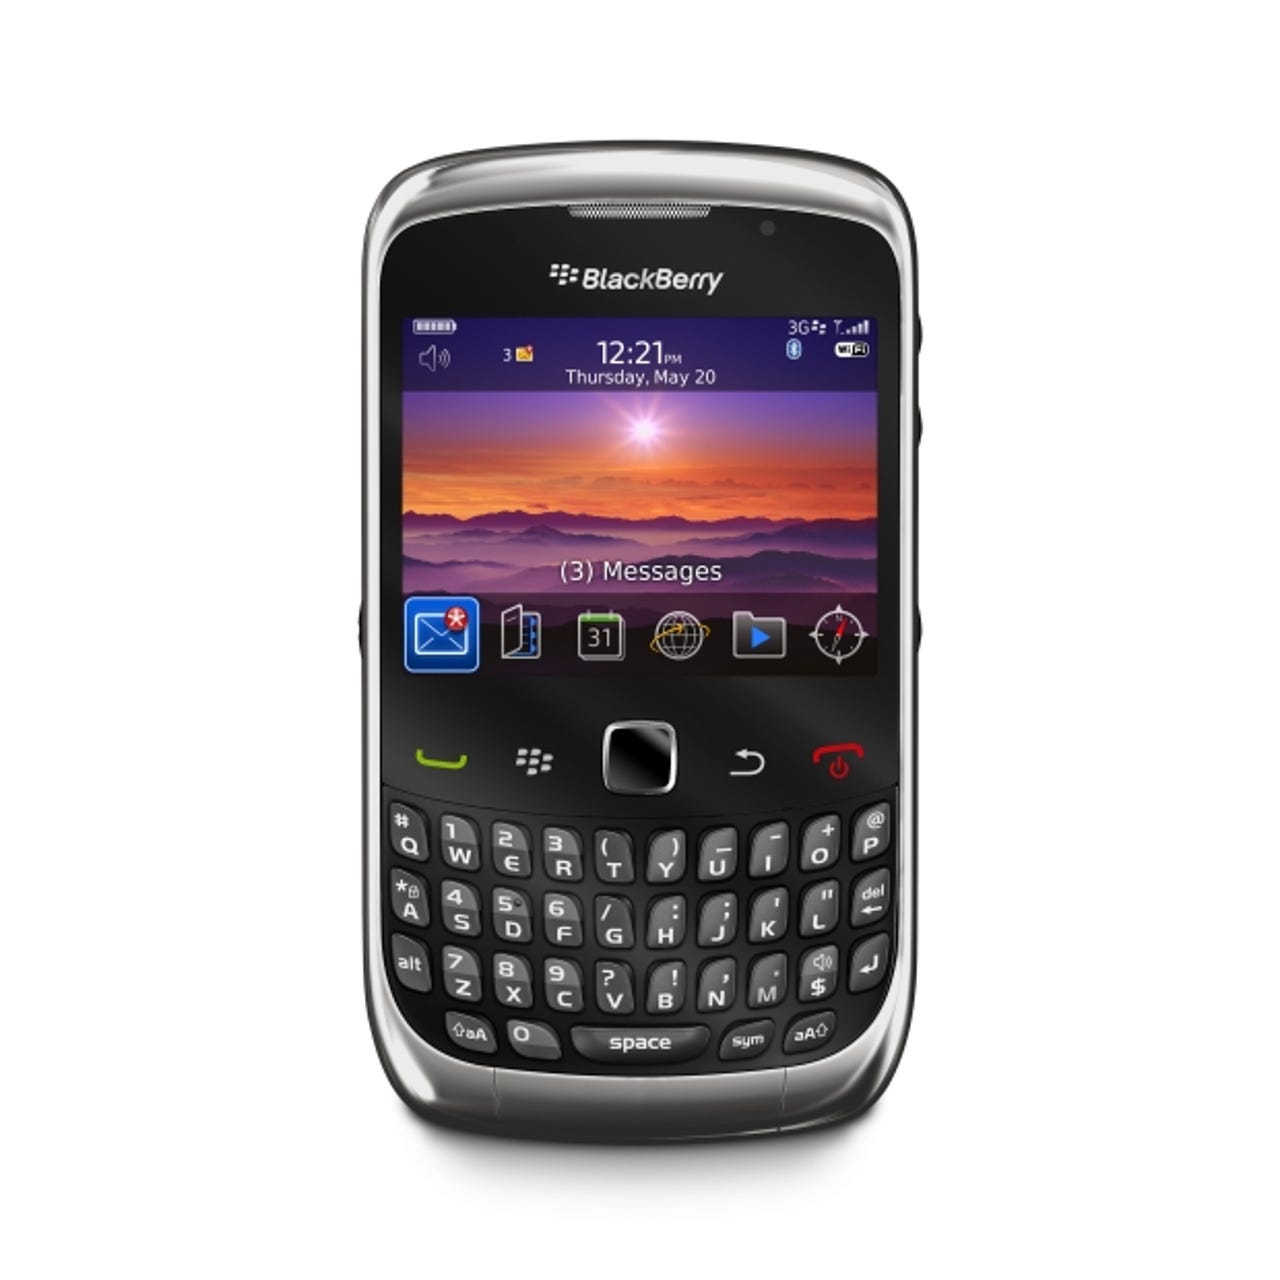 blackberrycurve3g5.jpg